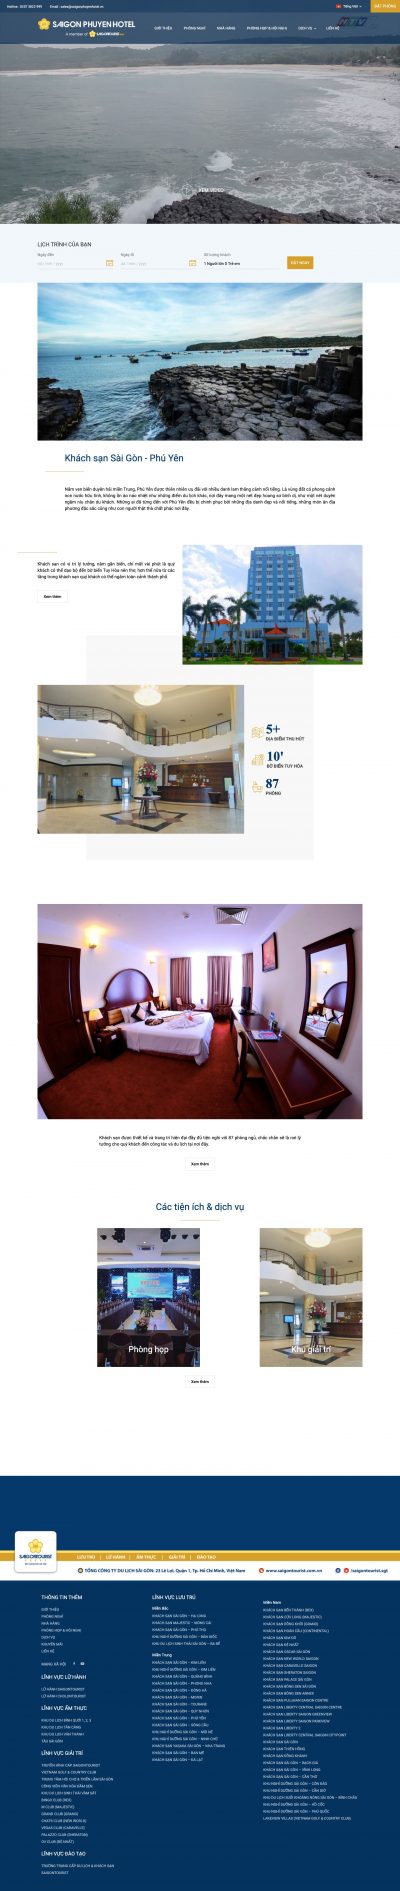 Khách sạn Sài Gòn – Phú Yên